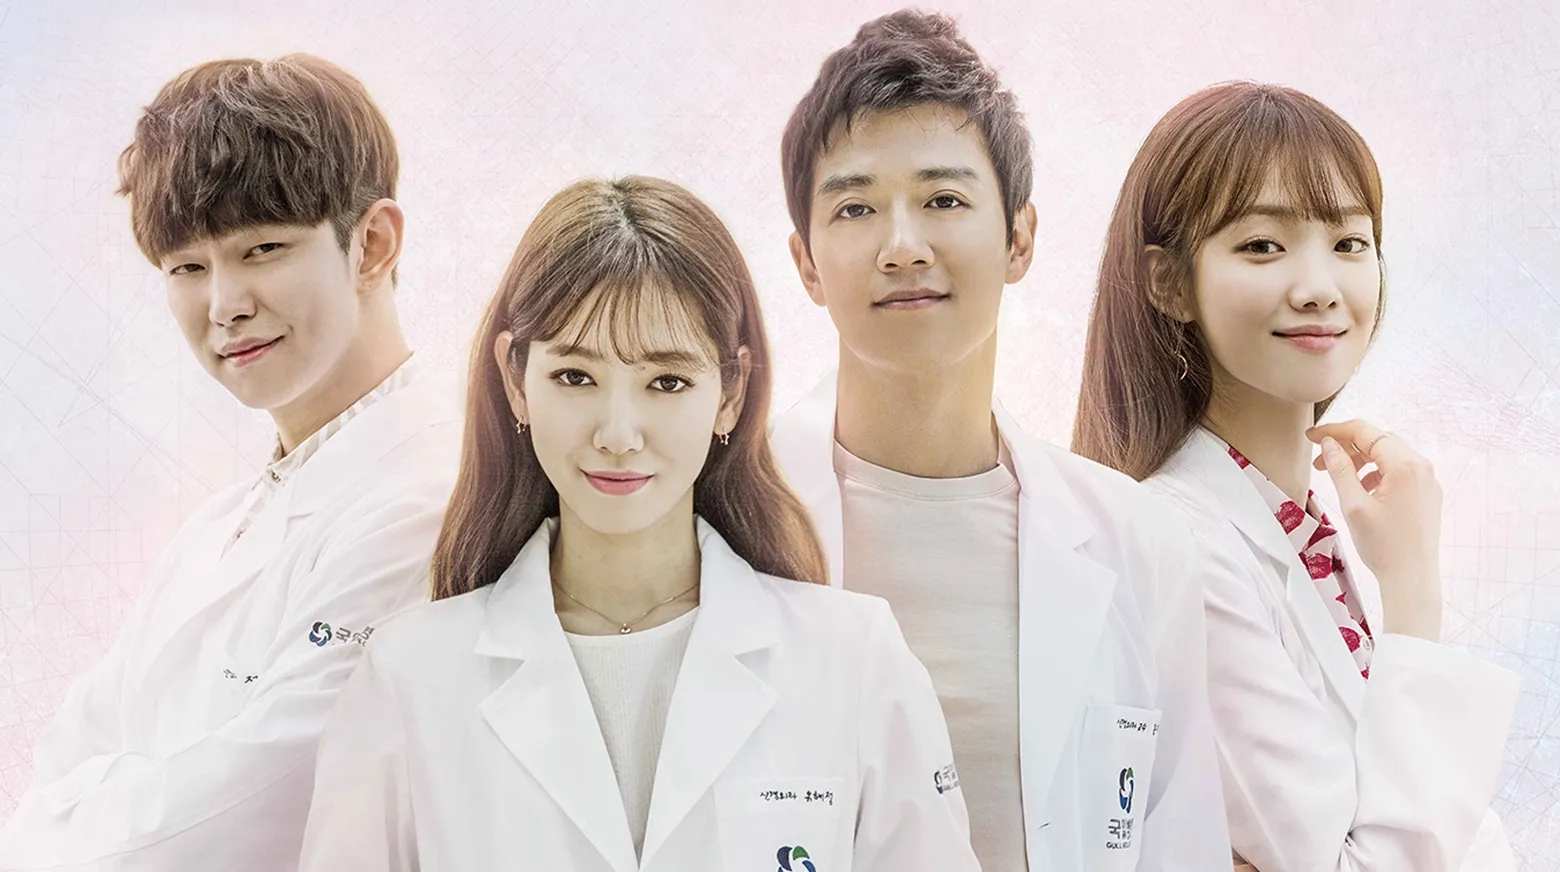 فیلم های پزشکی کره ای / سریال های دکتری کره ای